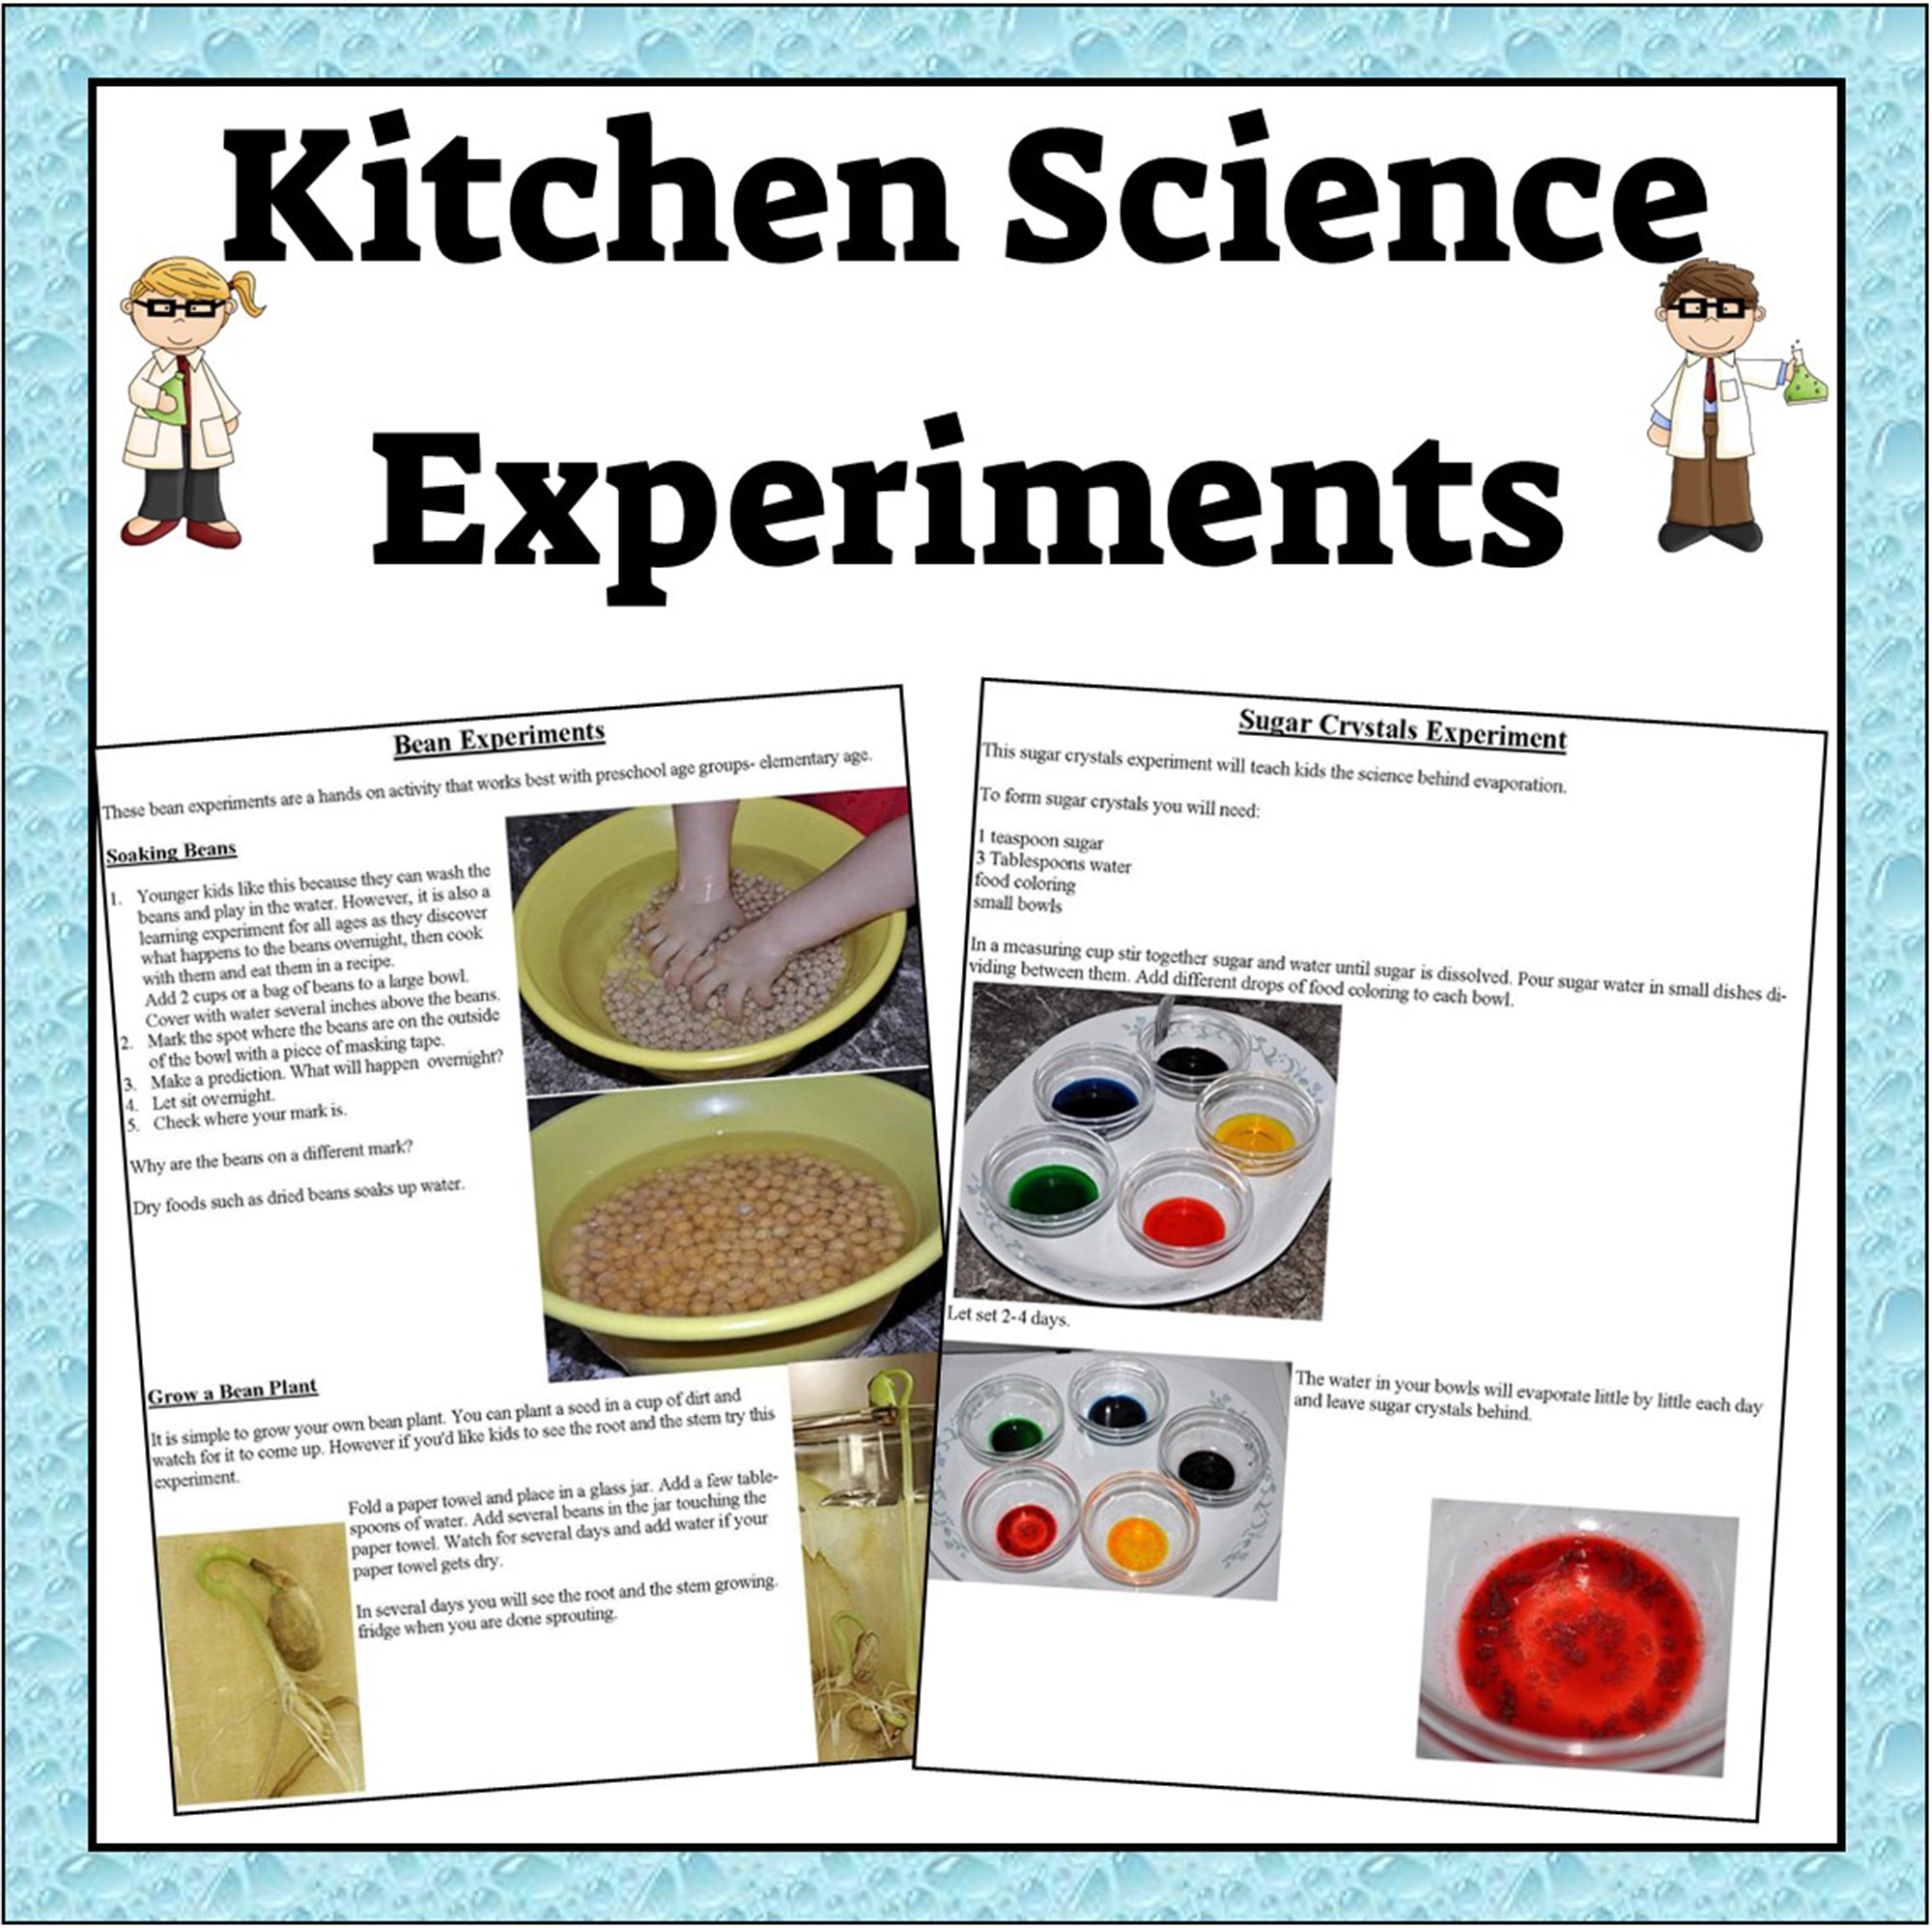 Food Science: Measuring